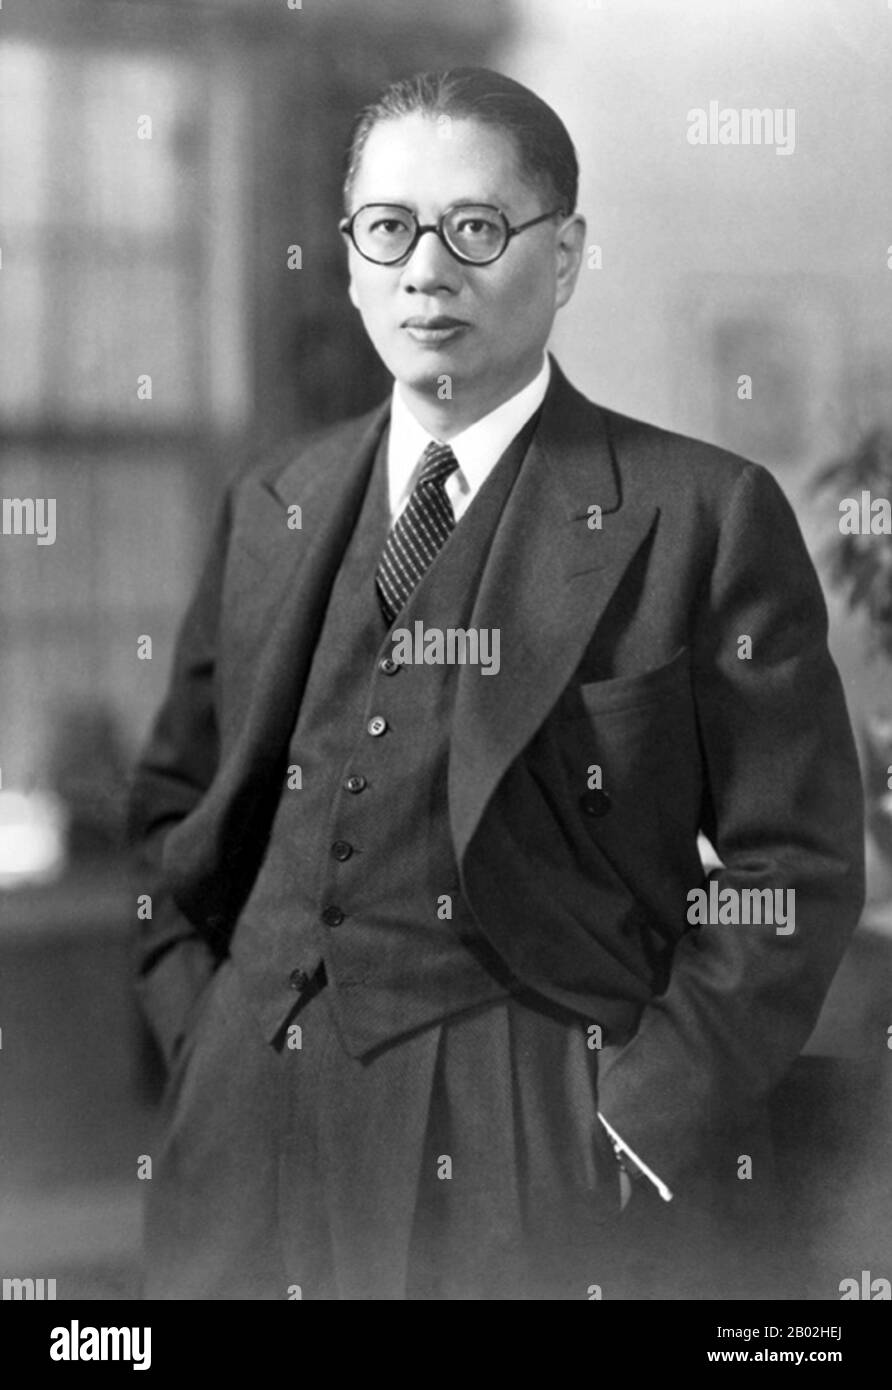 Soong Tse-ven o Soong Tzu-wen (chino: 宋子文; pinyin: Sòng Zǐwén; 4 de diciembre de 1891 – 26 de abril de 1971), fue un destacado empresario y político en la República China de principios del siglo XX. Su padre era Charlie Soong y sus hermanos eran las hermanas Soong. Su nombre cristiano era Pablo, pero es generalmente conocido en inglés como T. V. Soong. Como hermano de las tres hermanas Soong, los cuñados de Soong fueron el Dr. Sun Yat-sen, el Generalísimo Chiang Kai-shek y el financiero H. H. Kung. Foto de stock